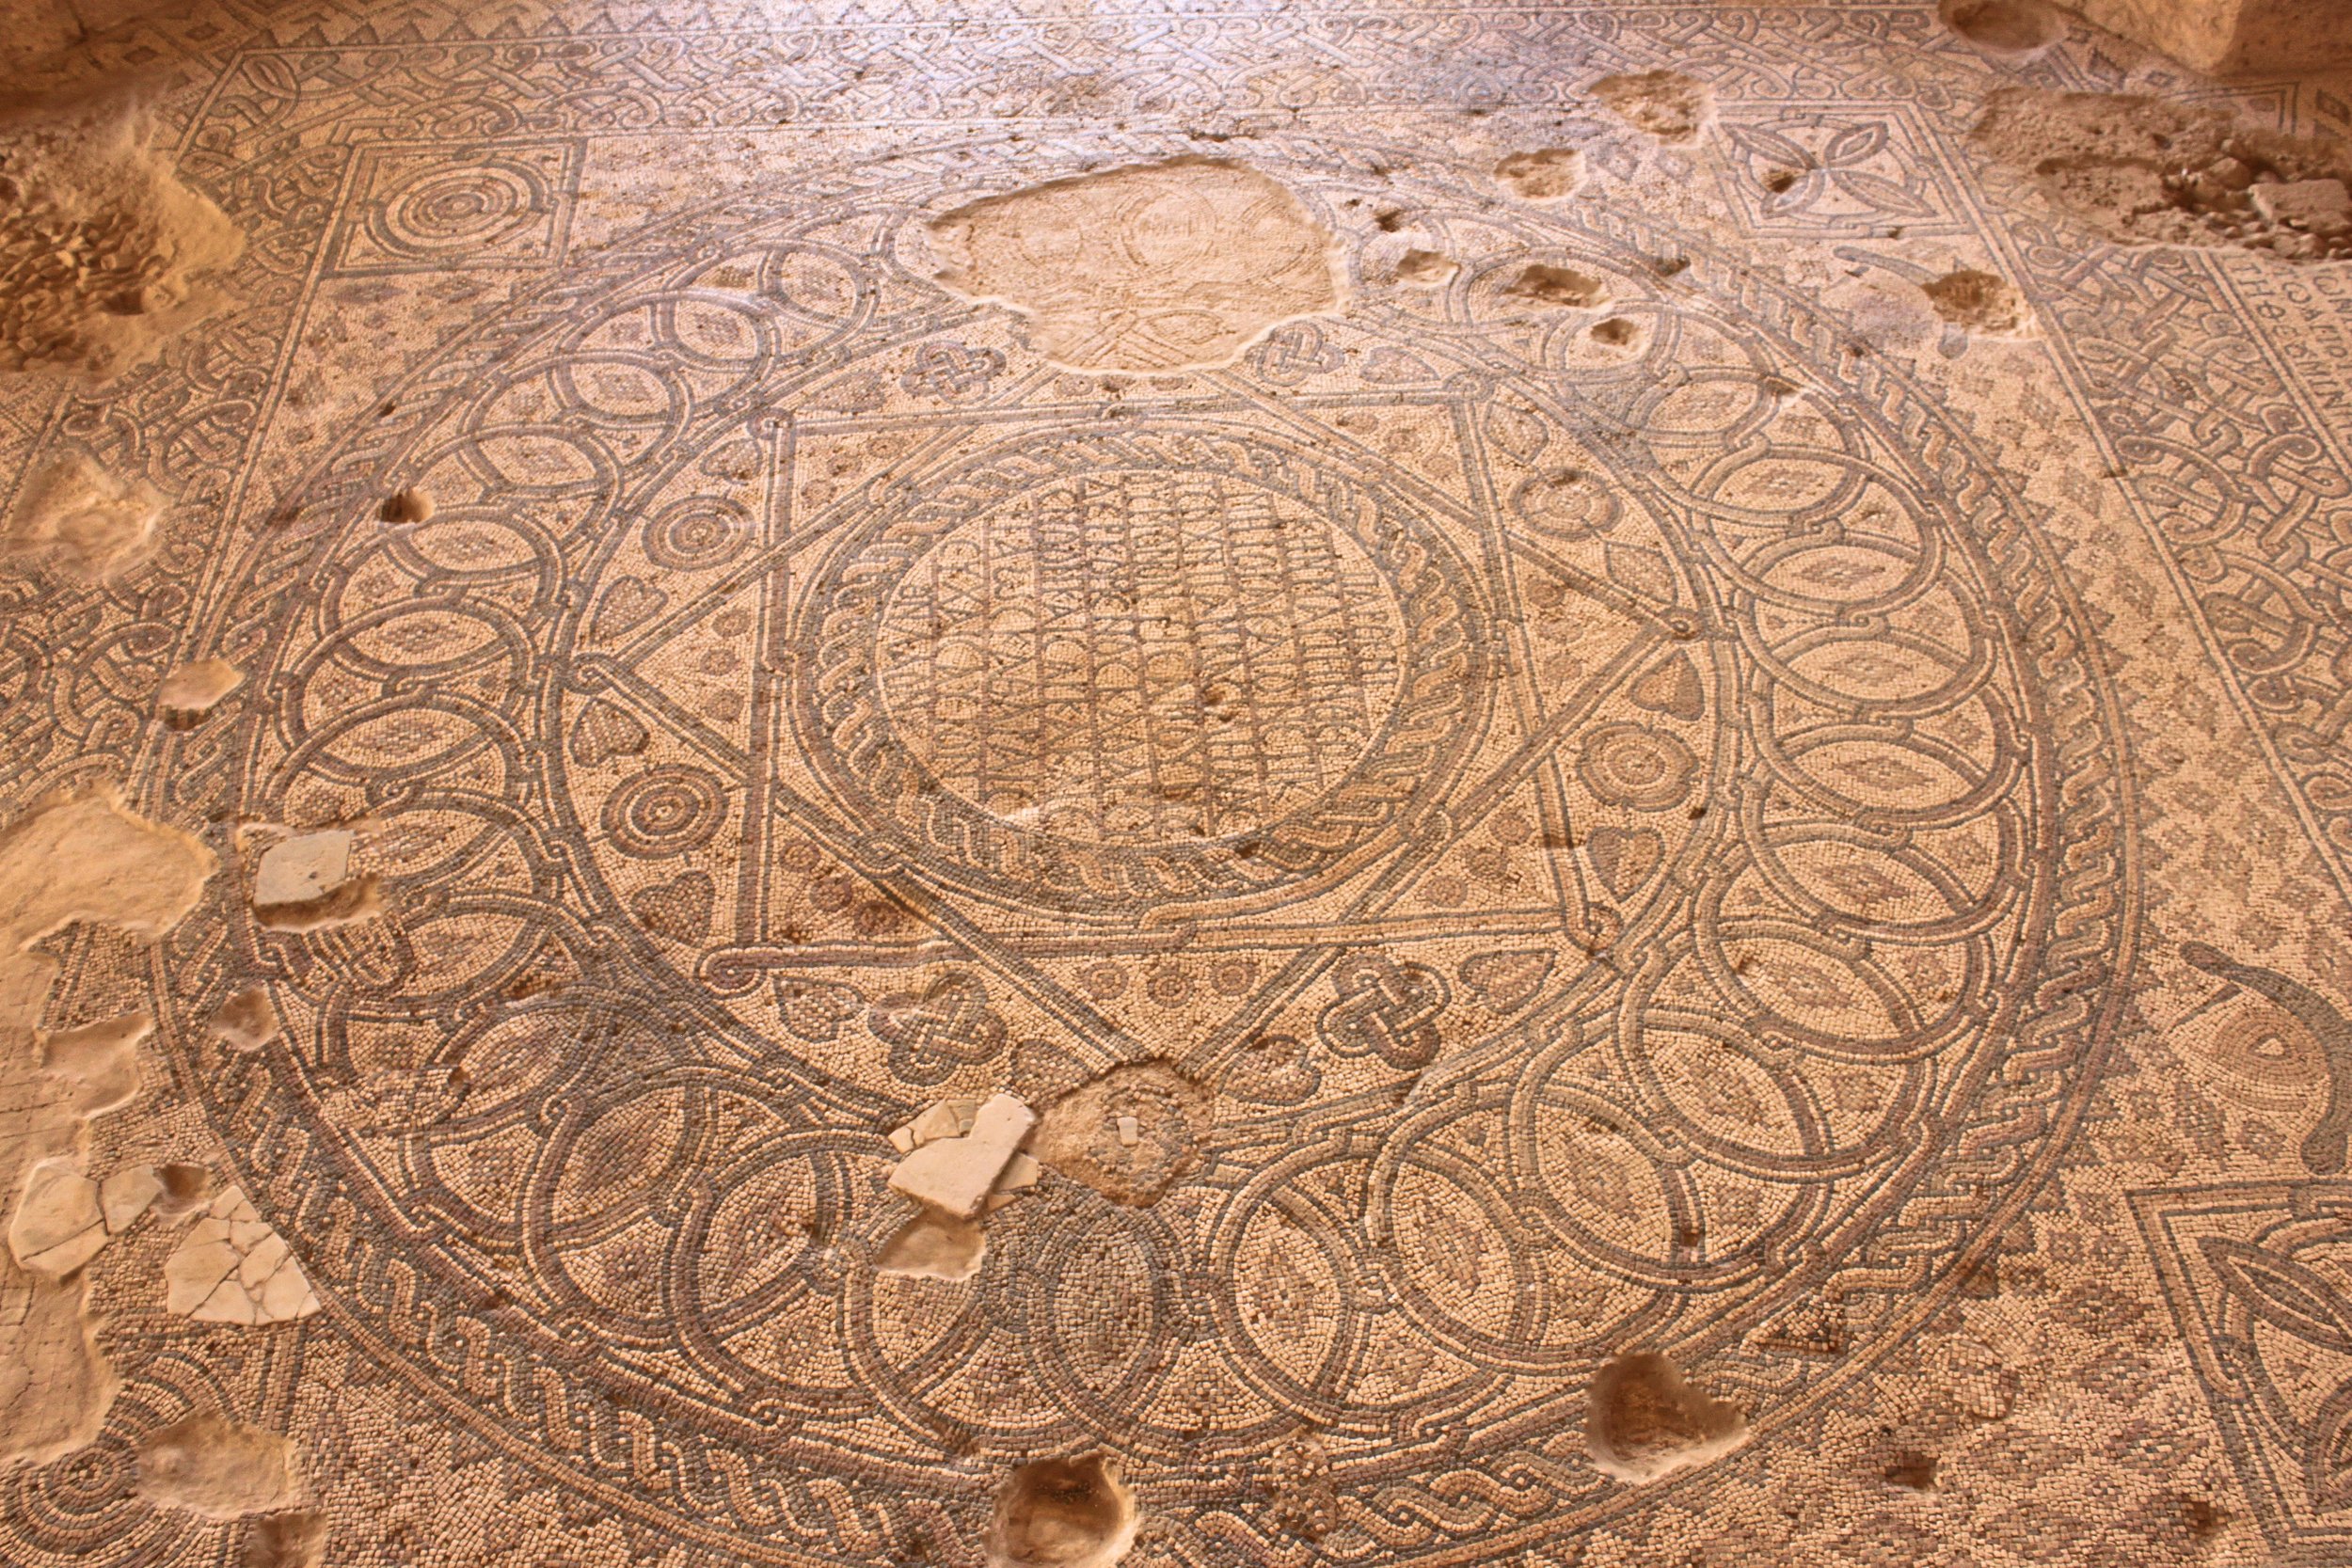 Floor mosaics in the Madaba Archeological Park, Jordan